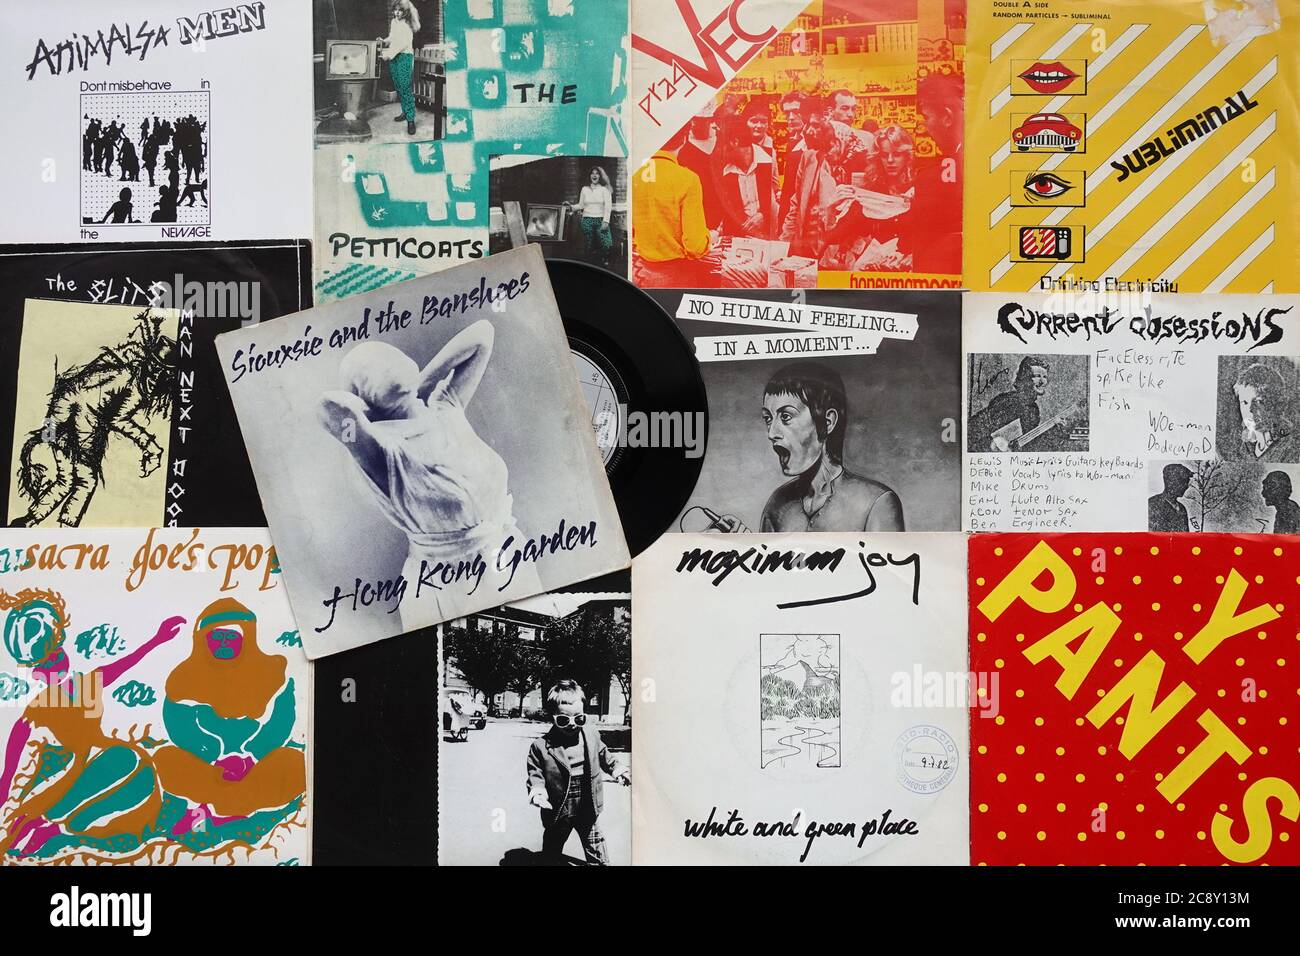 Athen, Griechenland - 26. April 2020: Vinyl-Schallplattensingles von Female Fronted Post Punk New Wave Musik zwischen 1978-1982 und Hong Kong Garden von Si veröffentlicht Stockfoto